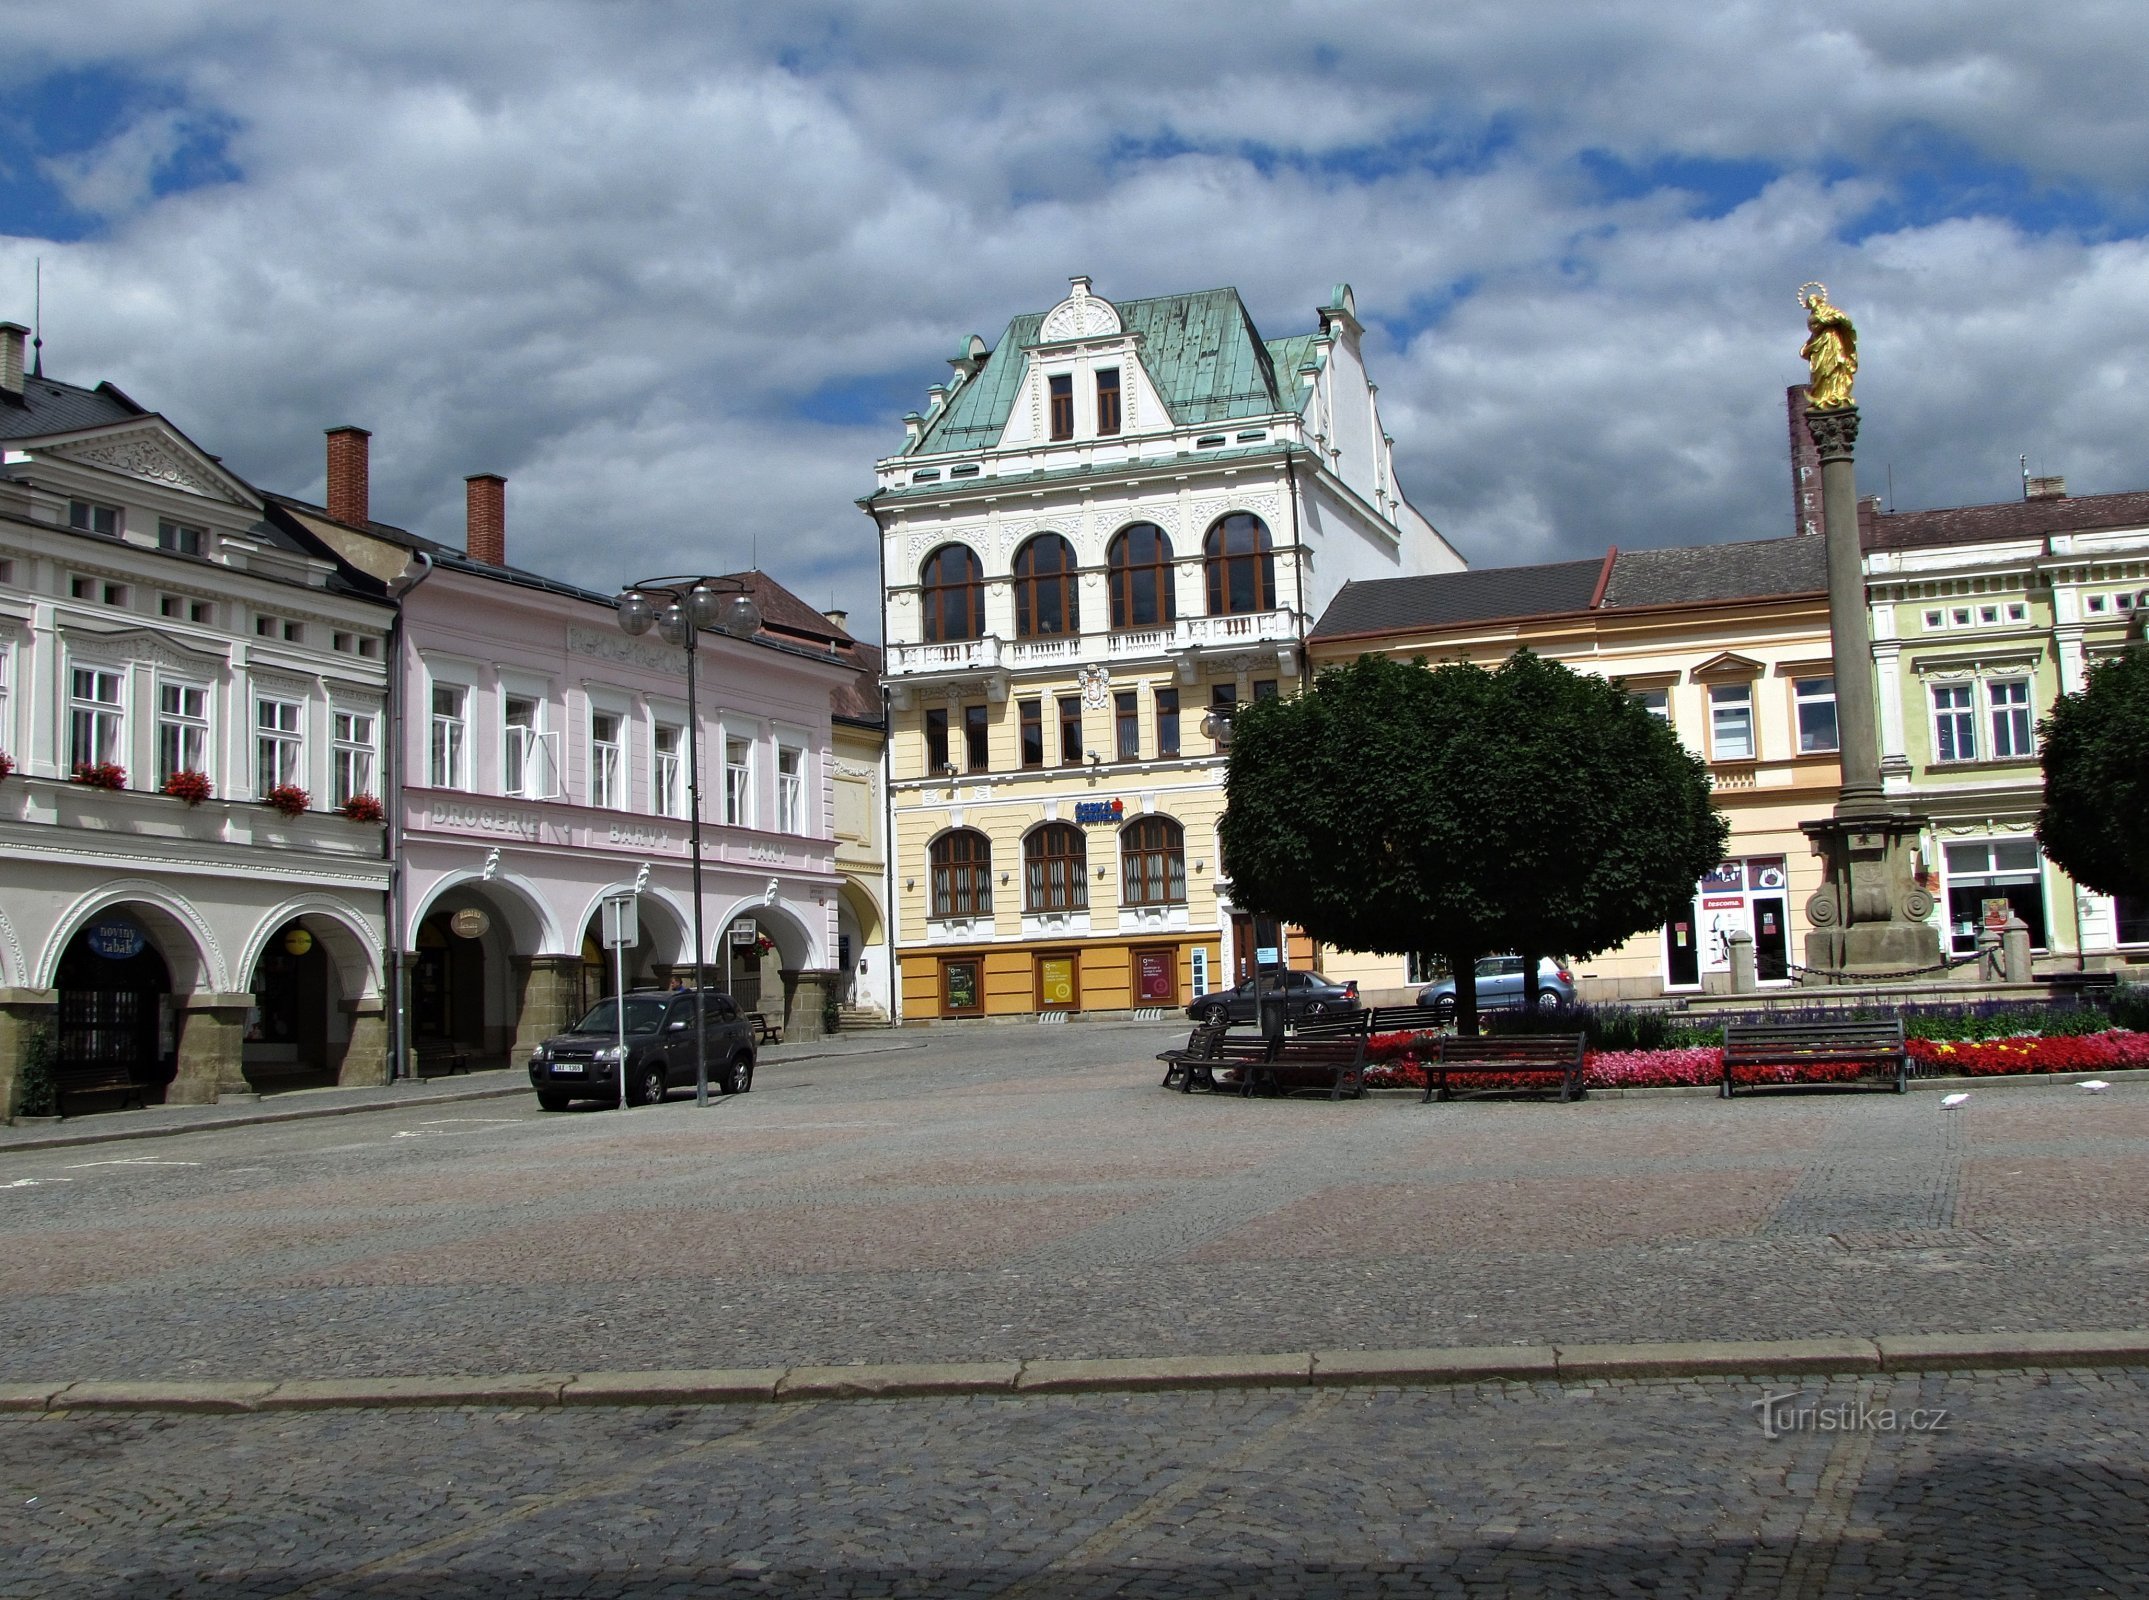 Ústí nad Orlicí - khu chợ đẹp nhất thành phố